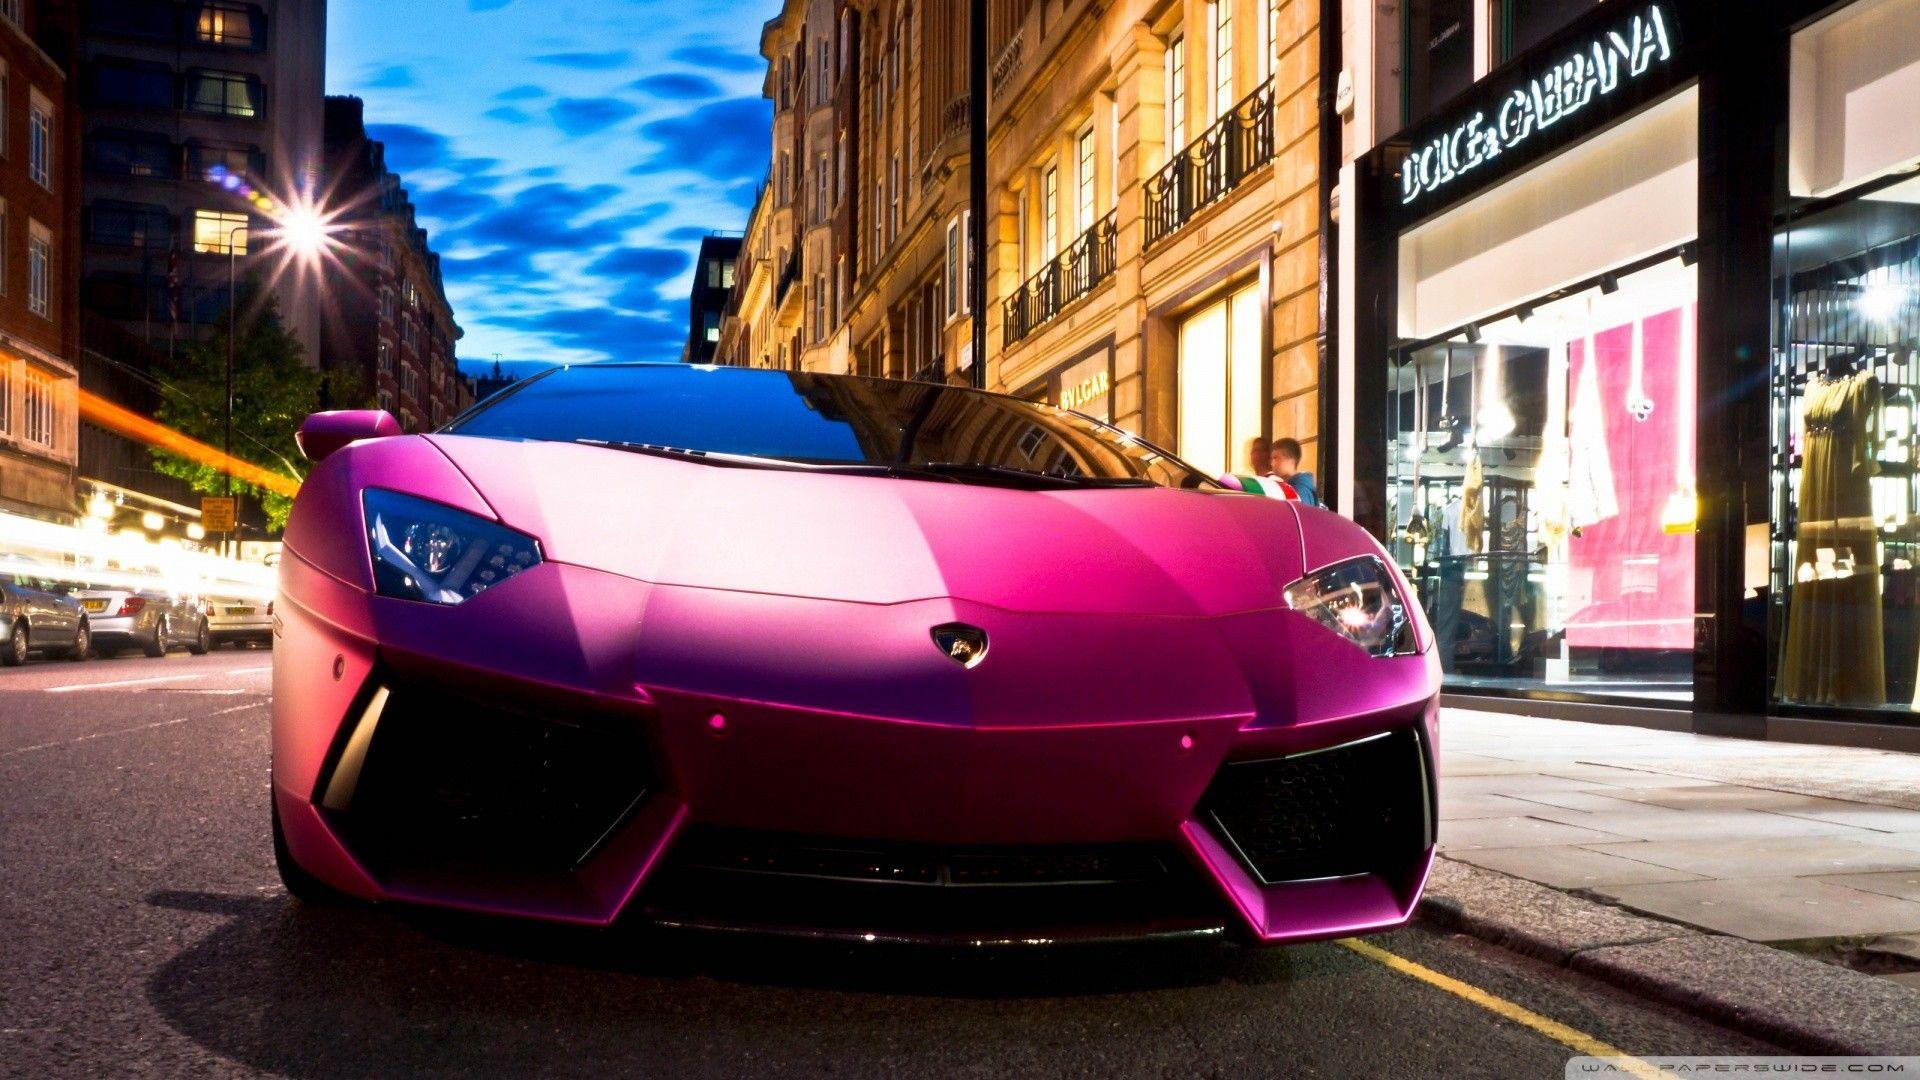 Neon Cool Pink Lamborghini Wallpapers